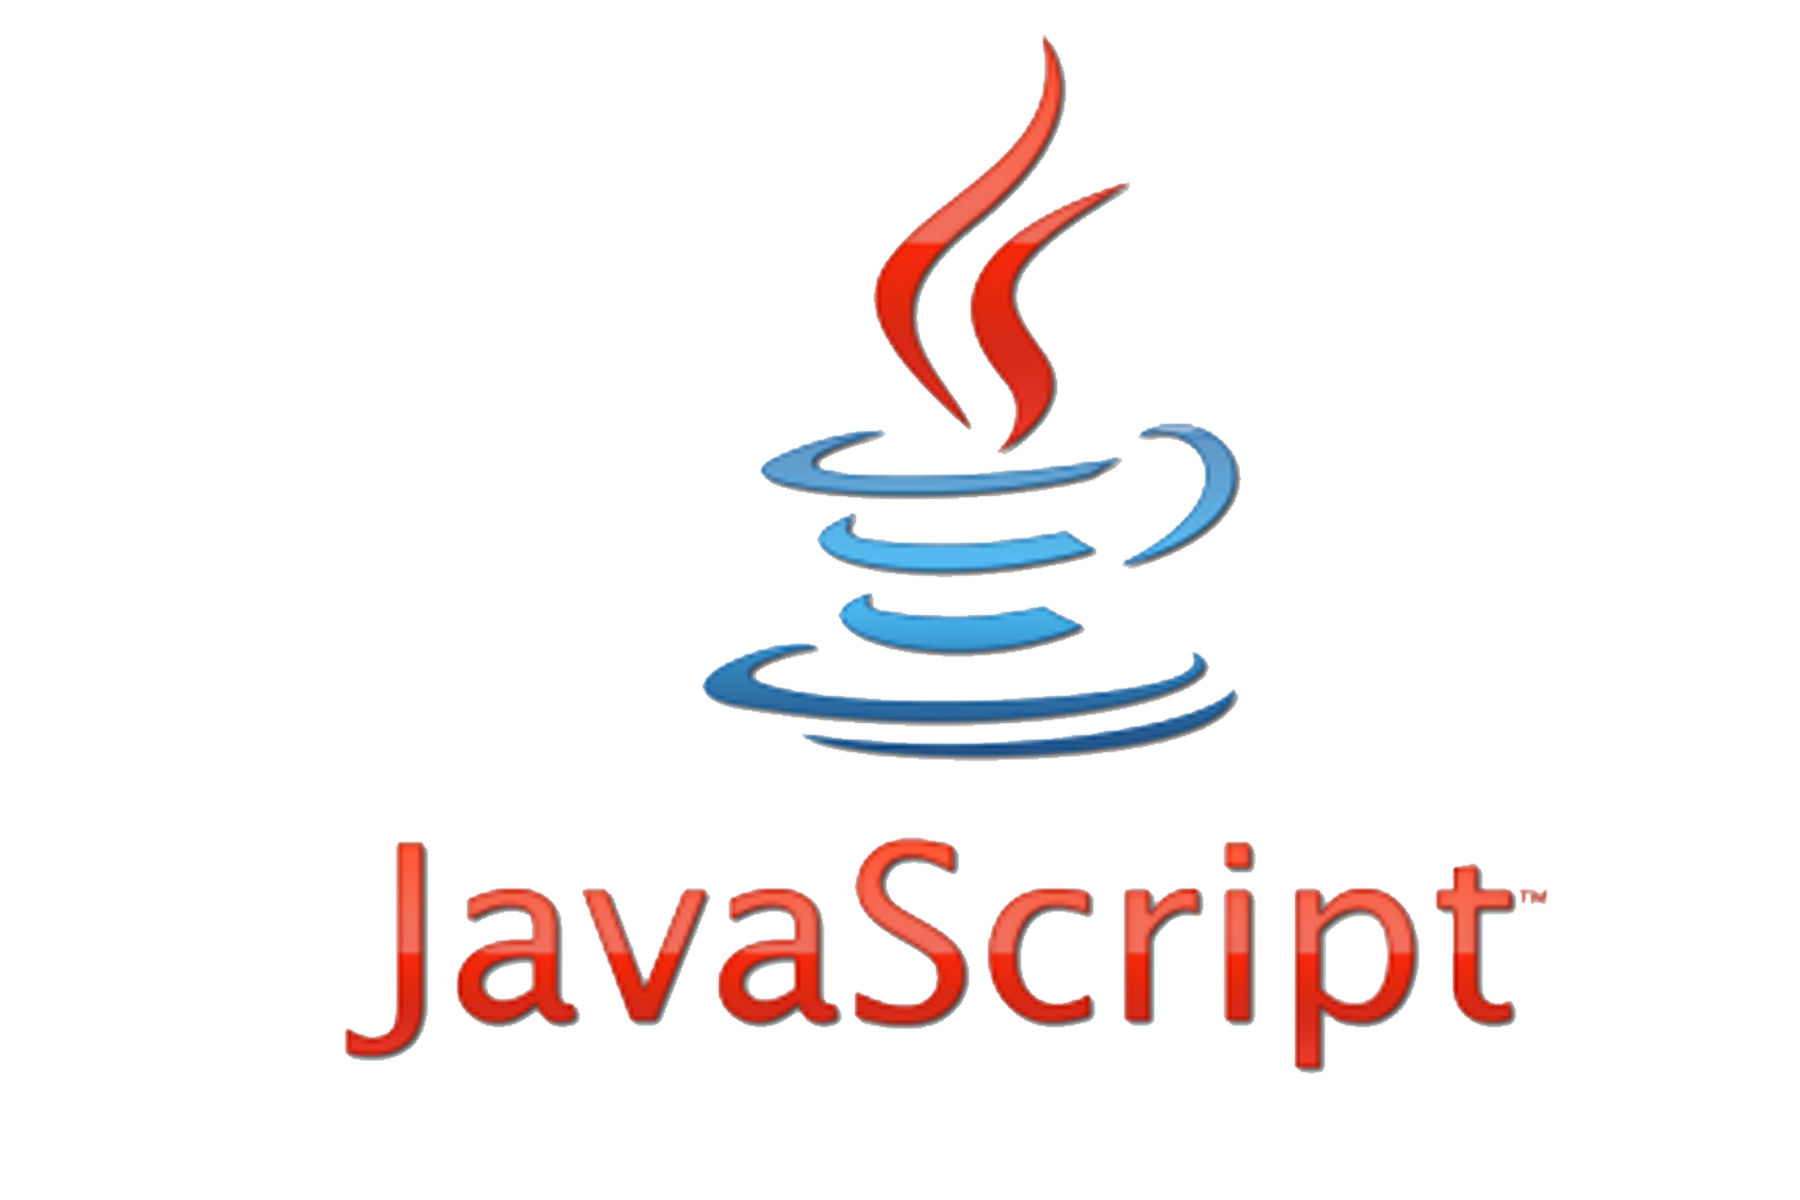 Java views. Язык программирования java скрипт. Язык программирования Ява скрипт. Джава скрипт логотип. Джава скрипт язык программирования логотип.